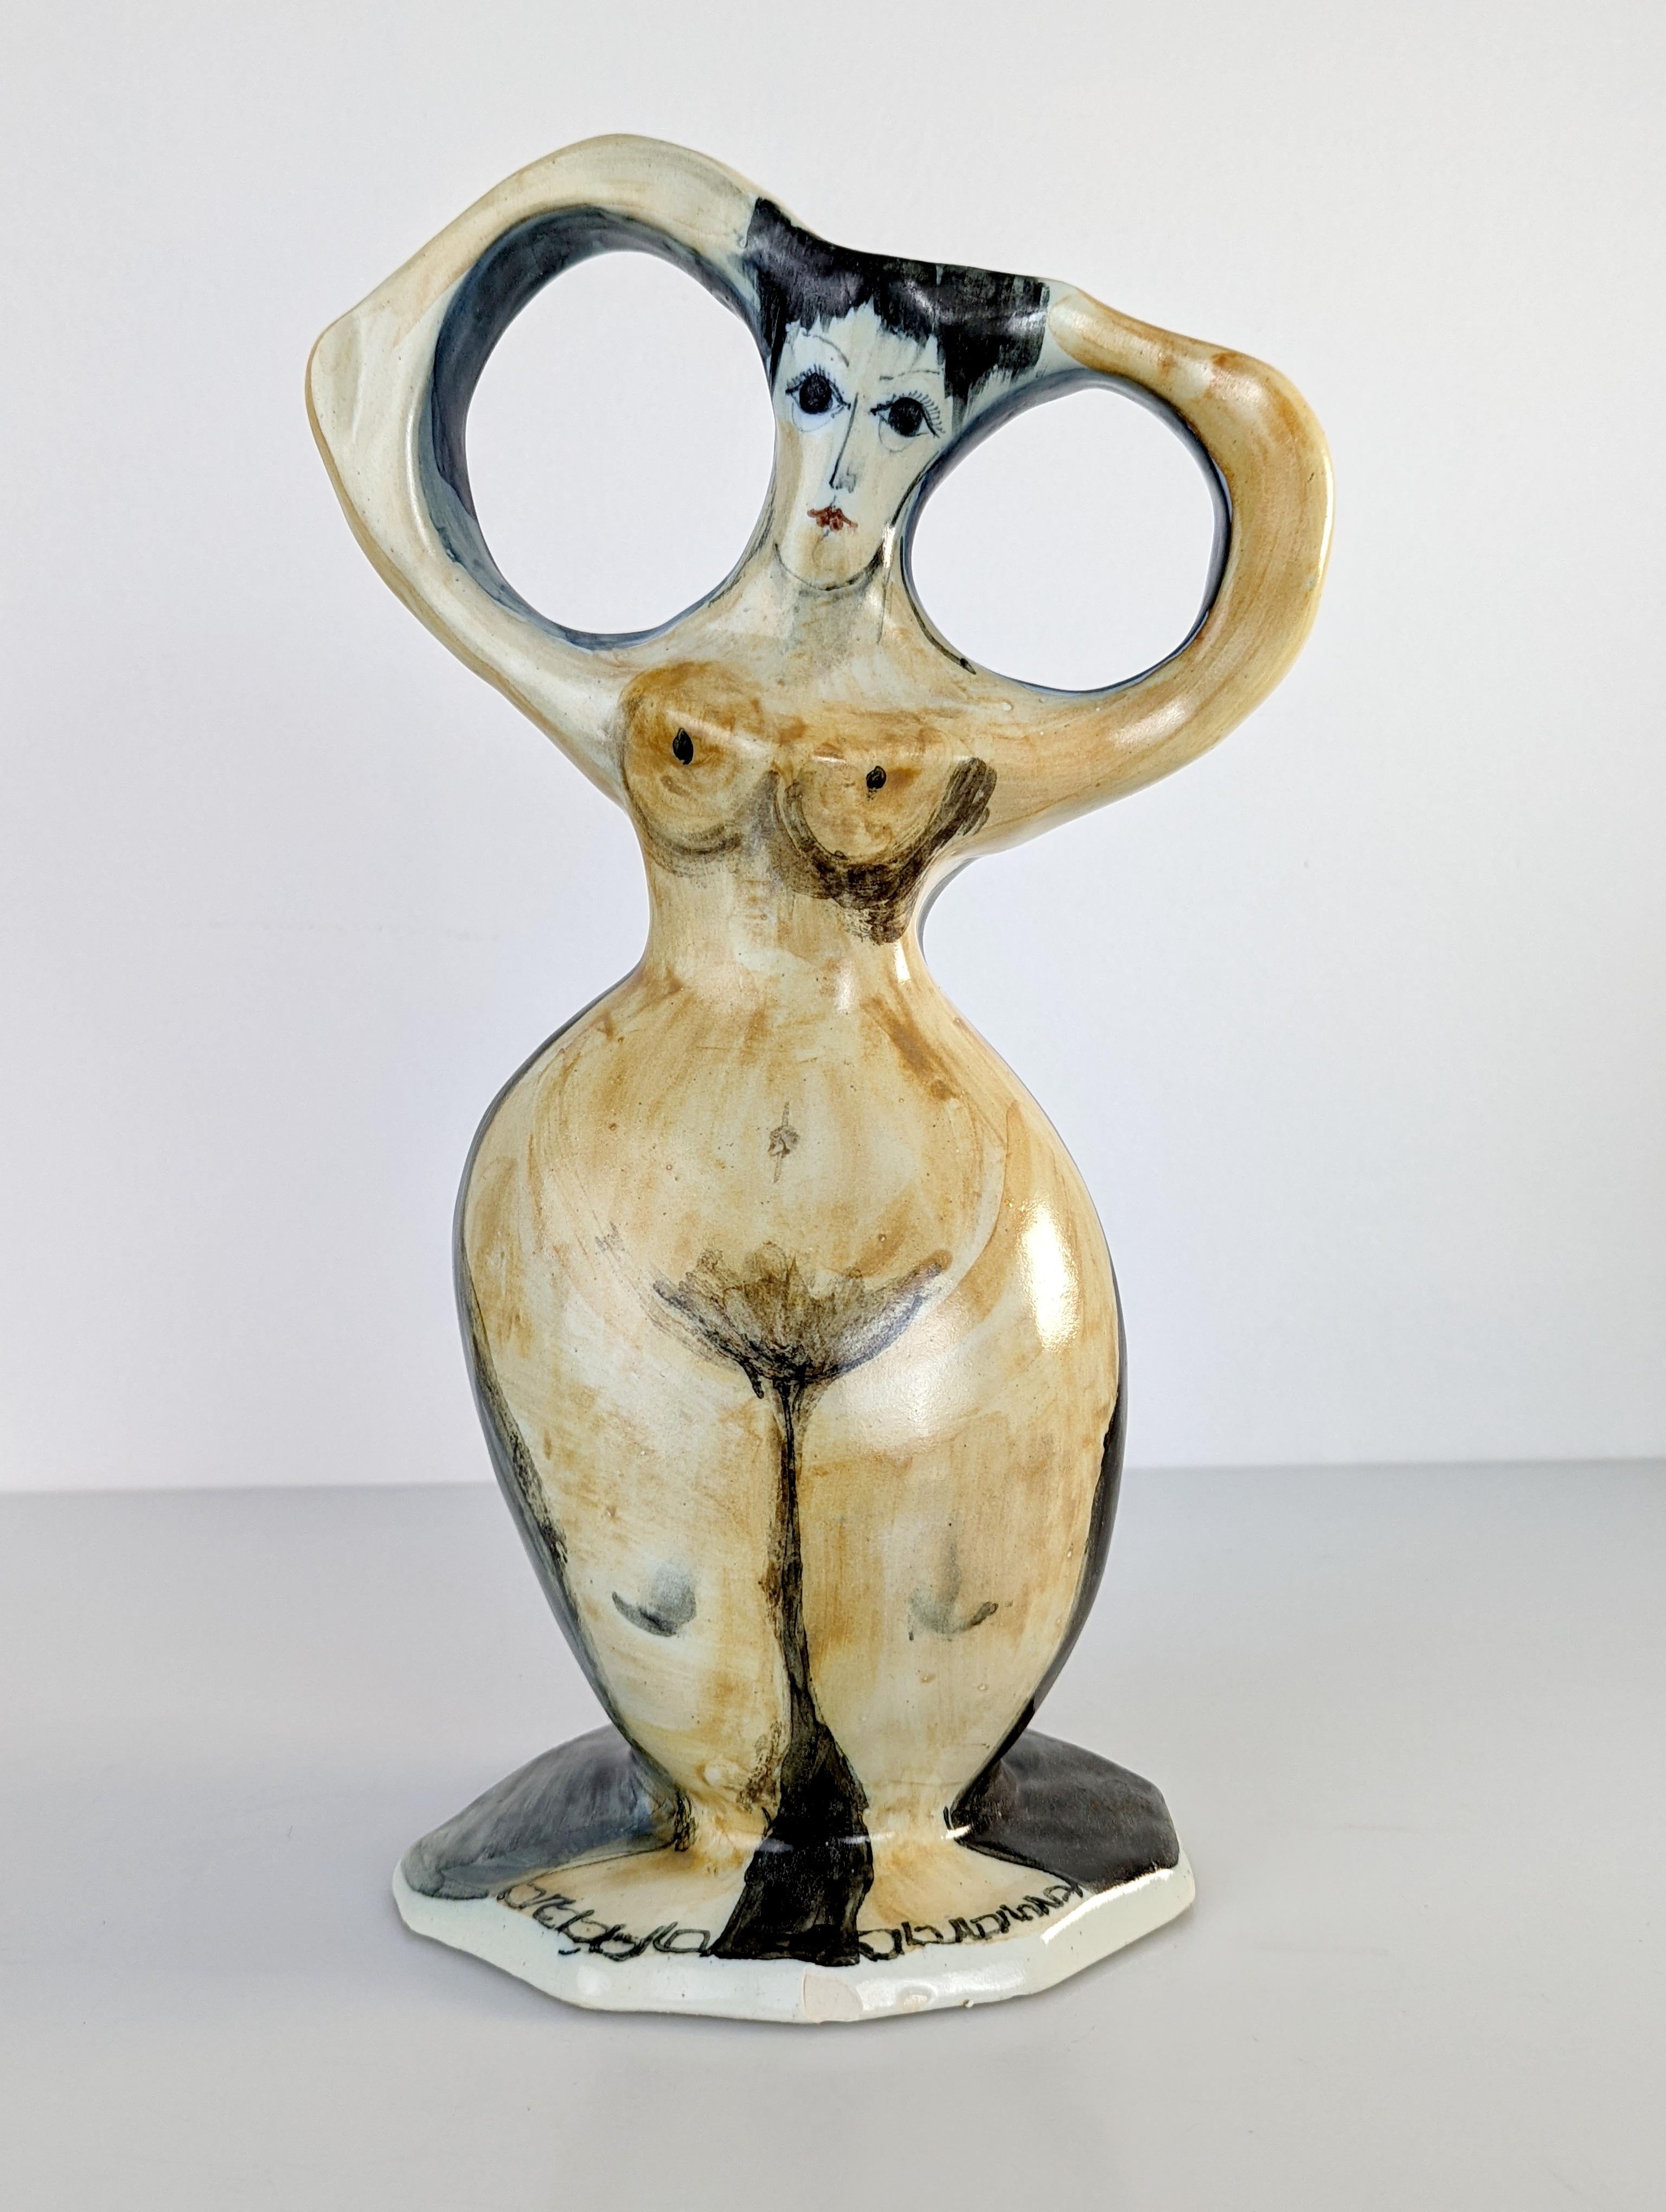 Außergewöhnliches figuratives Keramikstück, das einen weiblichen Akt mit wirklich wunderbarem Volumen und fantastischen Strichen darstellt, die das große Können und Talent des bisher unbekannten Künstlers widerspiegeln.